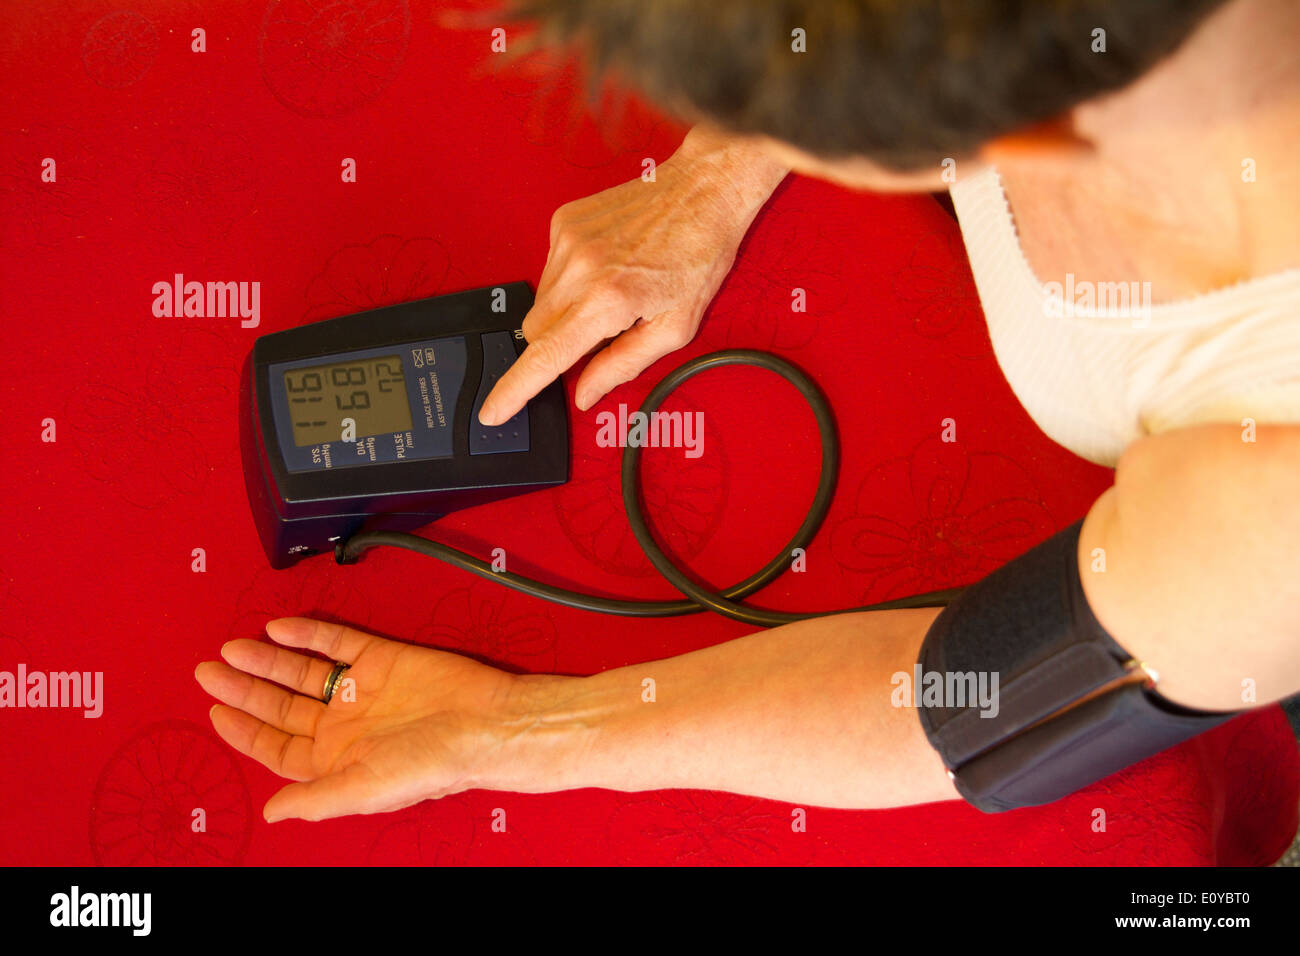 Ambulatory blood pressure unit Stock Photo